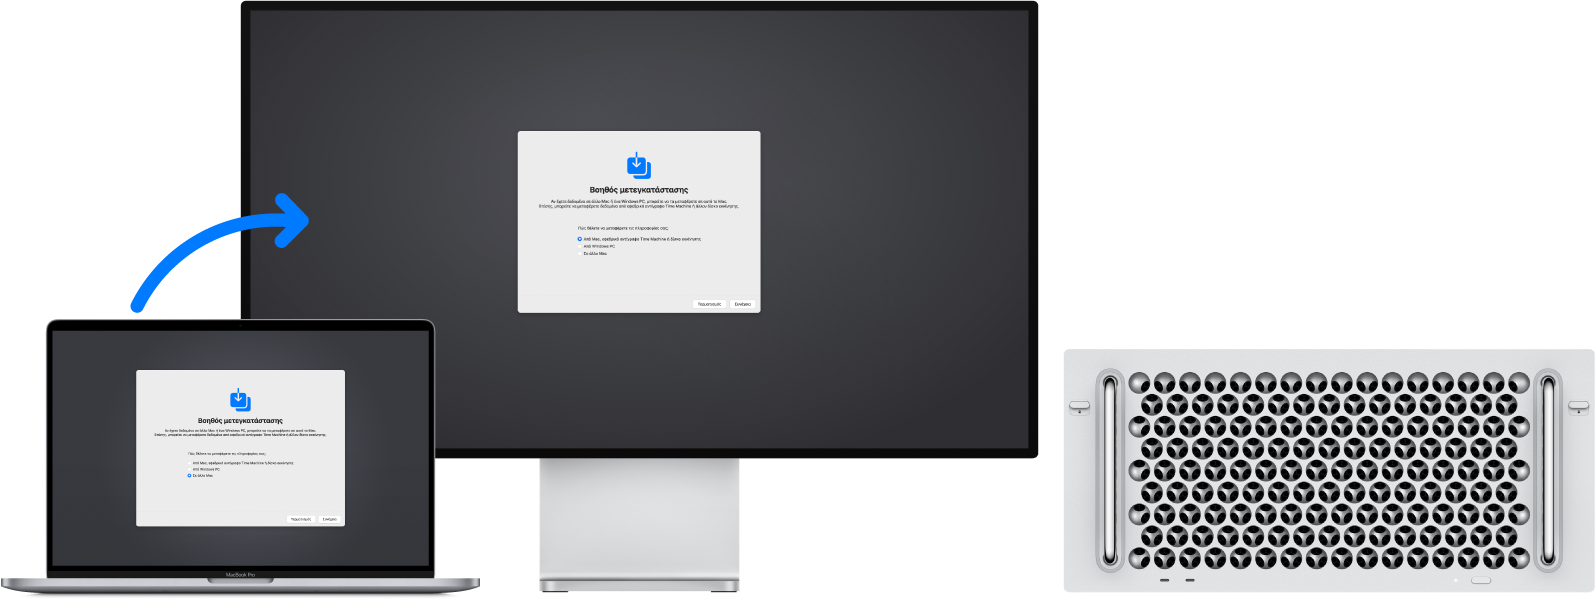 Ένα MacBook Pro και ένα Mac Pro που εμφανίζουν και τα δύο την οθόνη του Βοηθού μετεγκατάστασης. Ένα βέλος από το MacBook Pro στο Mac Pro υποδηλώνει τη μεταφορά δεδομένων από το ένα στο άλλο.